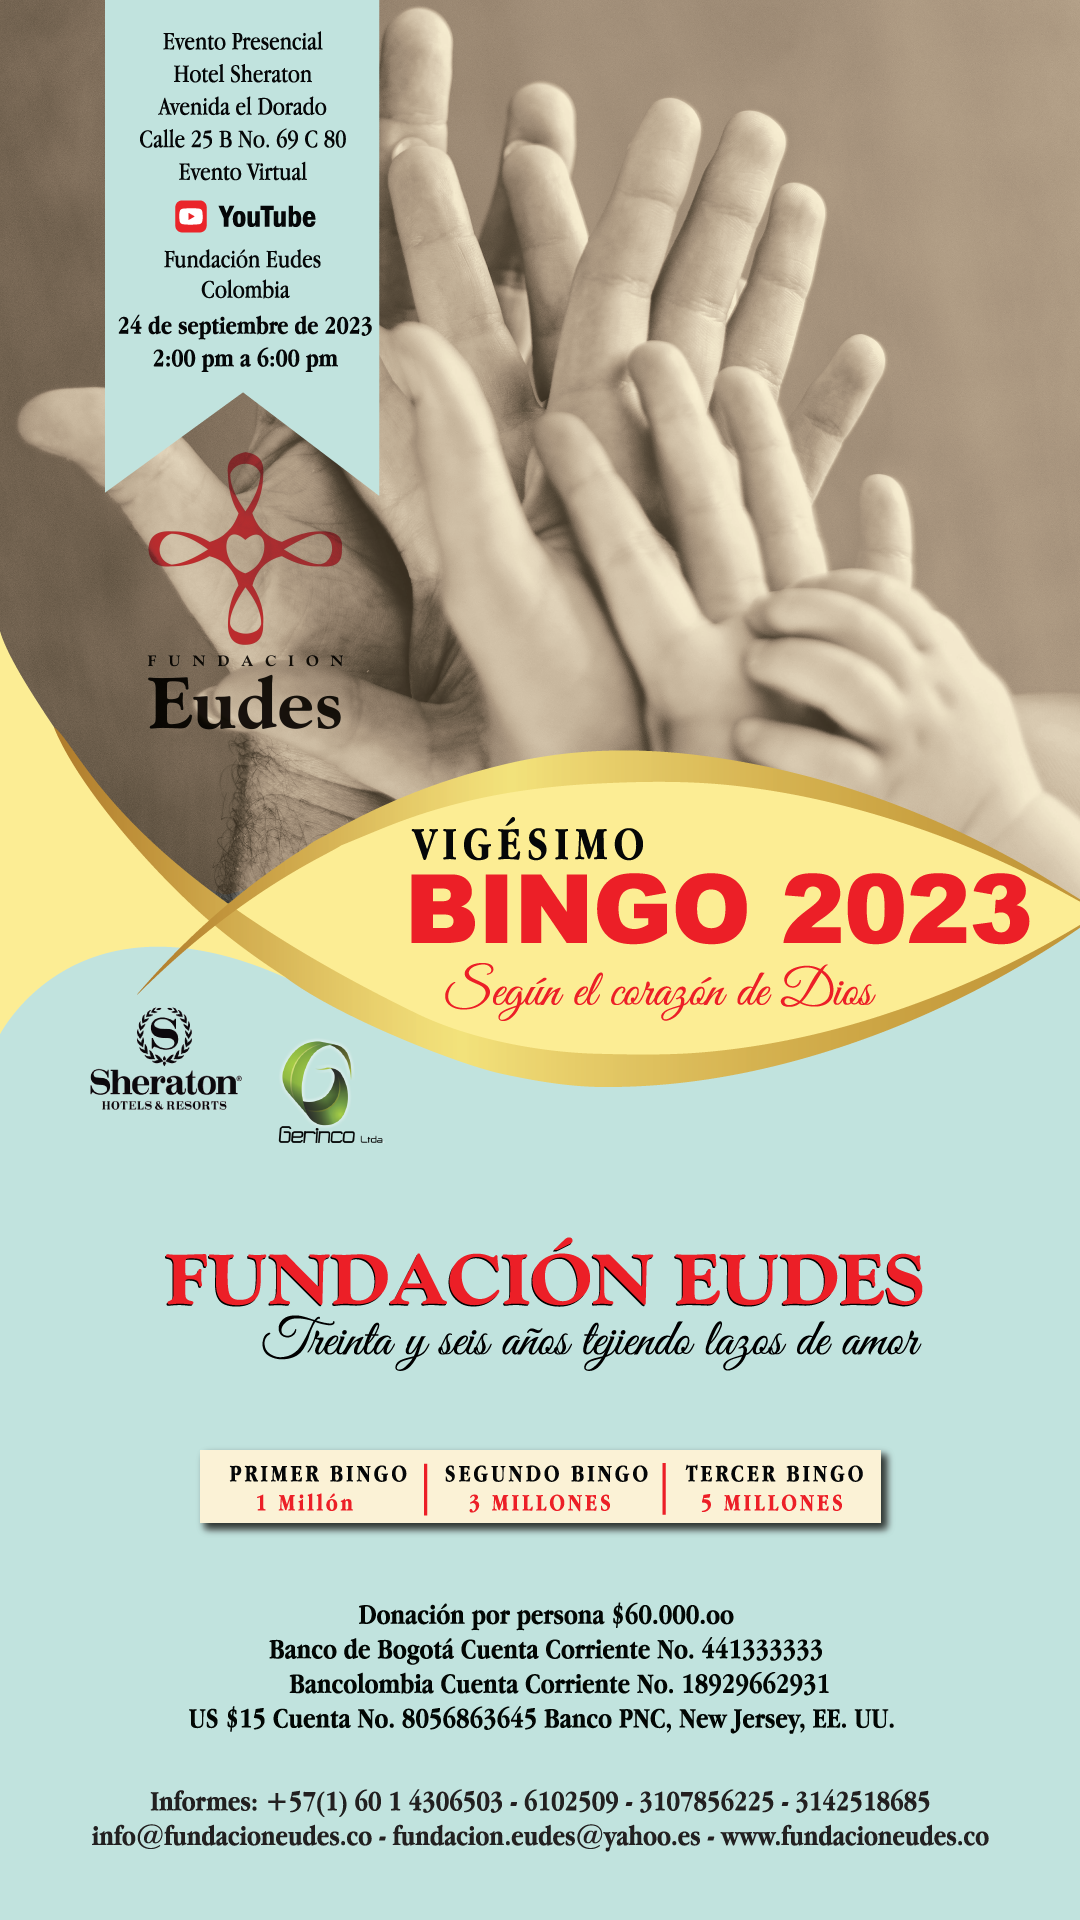 Bingo 2023 Fundacion Eudes Bogota, Colombia